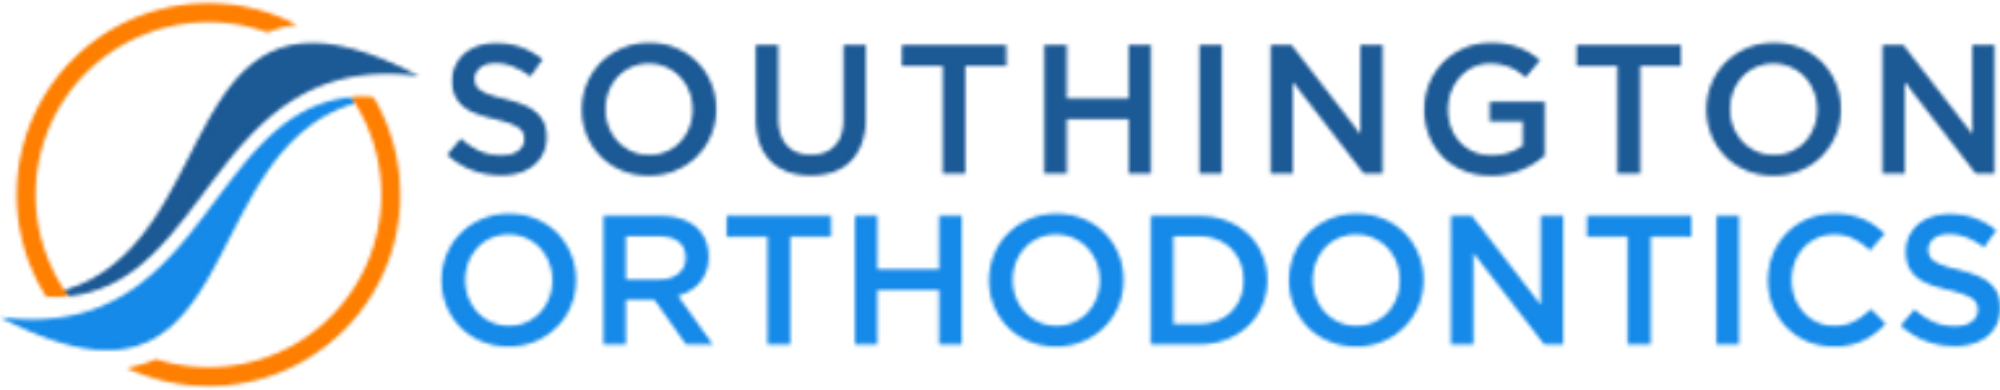 southington ortho logo